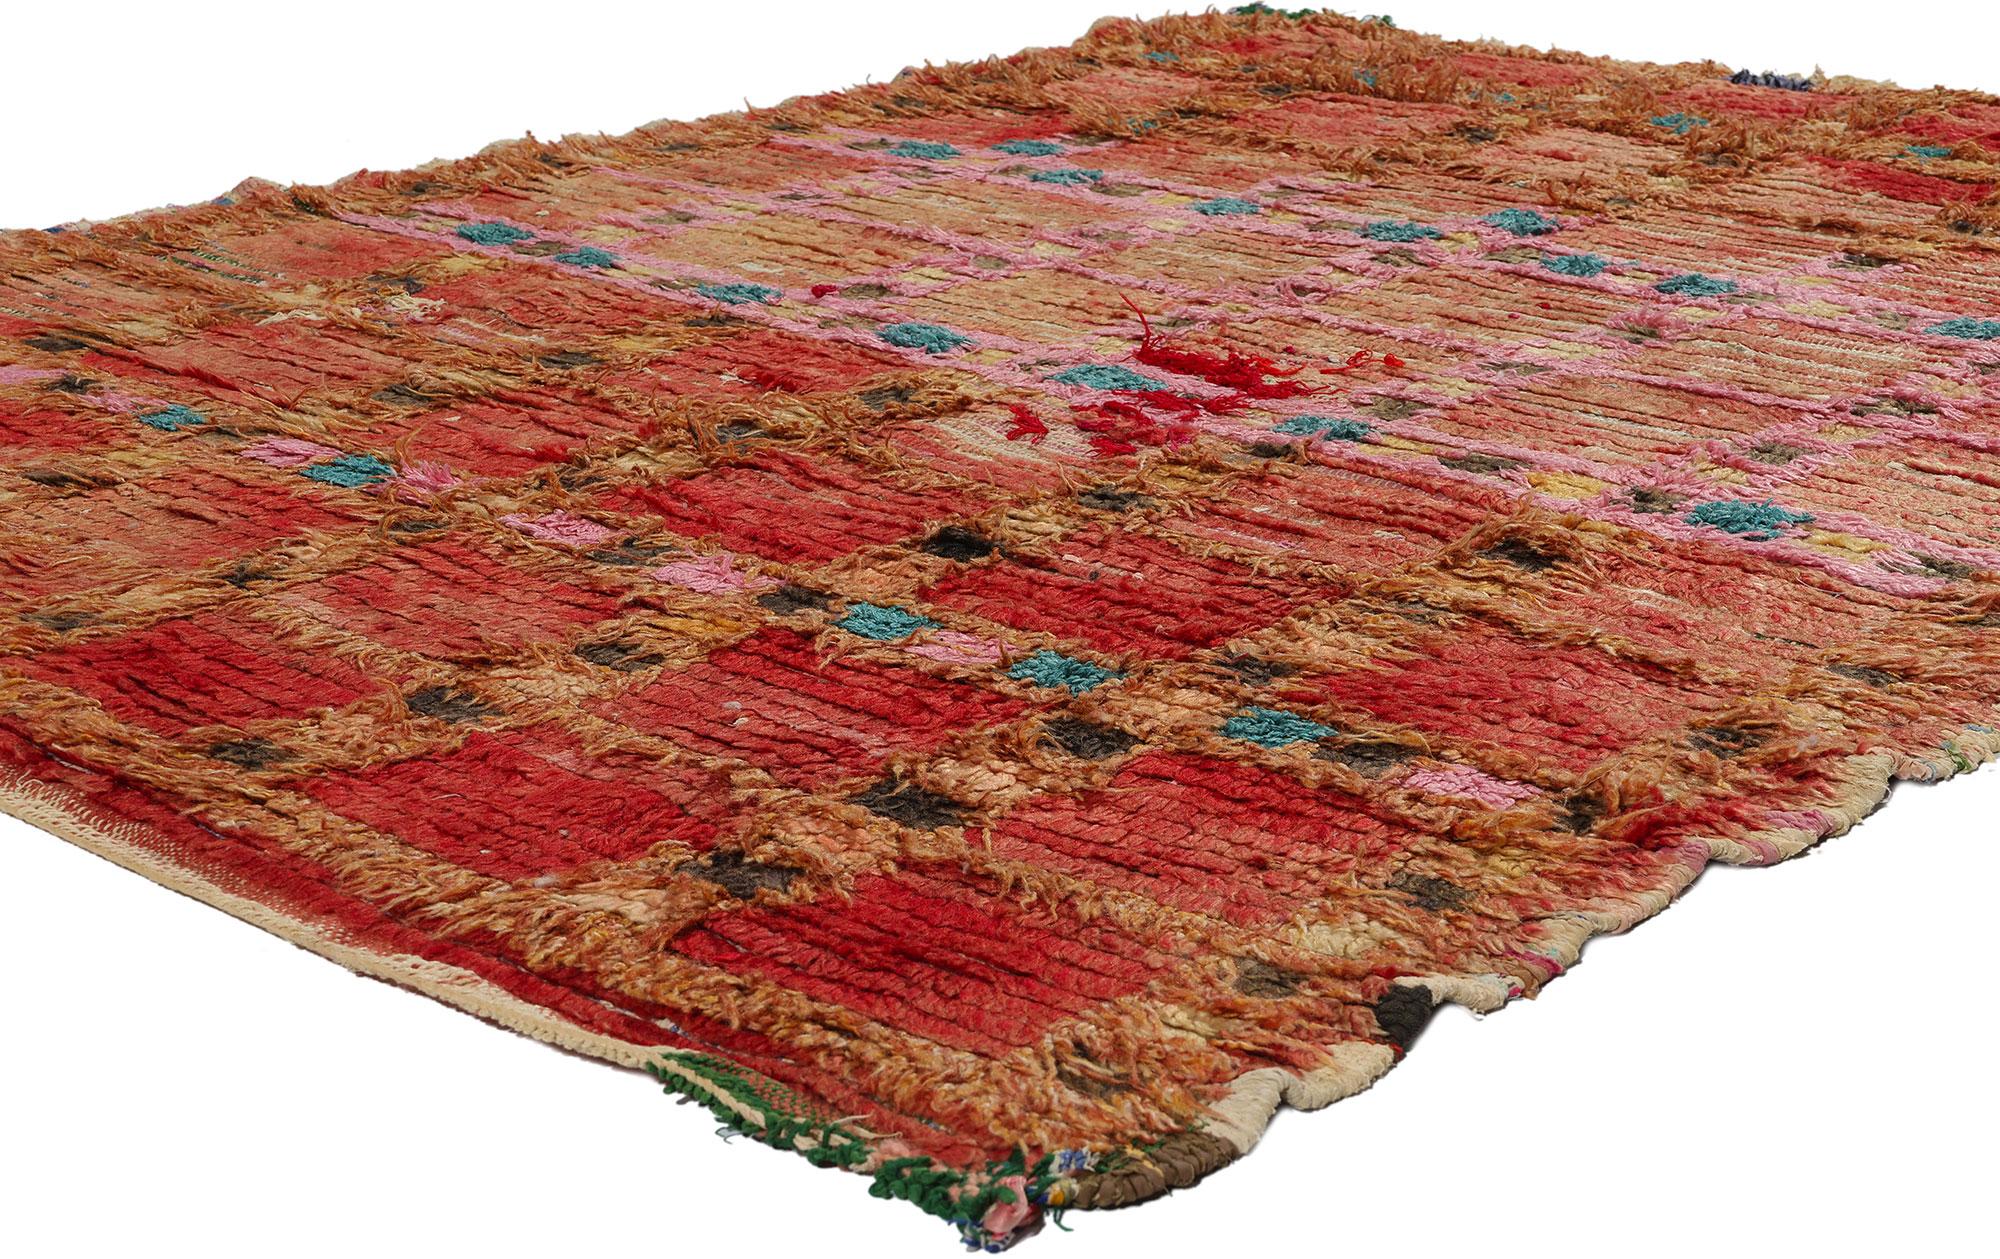 21723 Vintage Rot Marokkanischer Azilal-Teppich, 05'01 x 06'03. Die roten marokkanischen Azilal-Teppiche sind geschätzte Beispiele traditioneller marokkanischer Handwerkskunst, die von erfahrenen Berberhandwerkern aus der Azilal-Region in